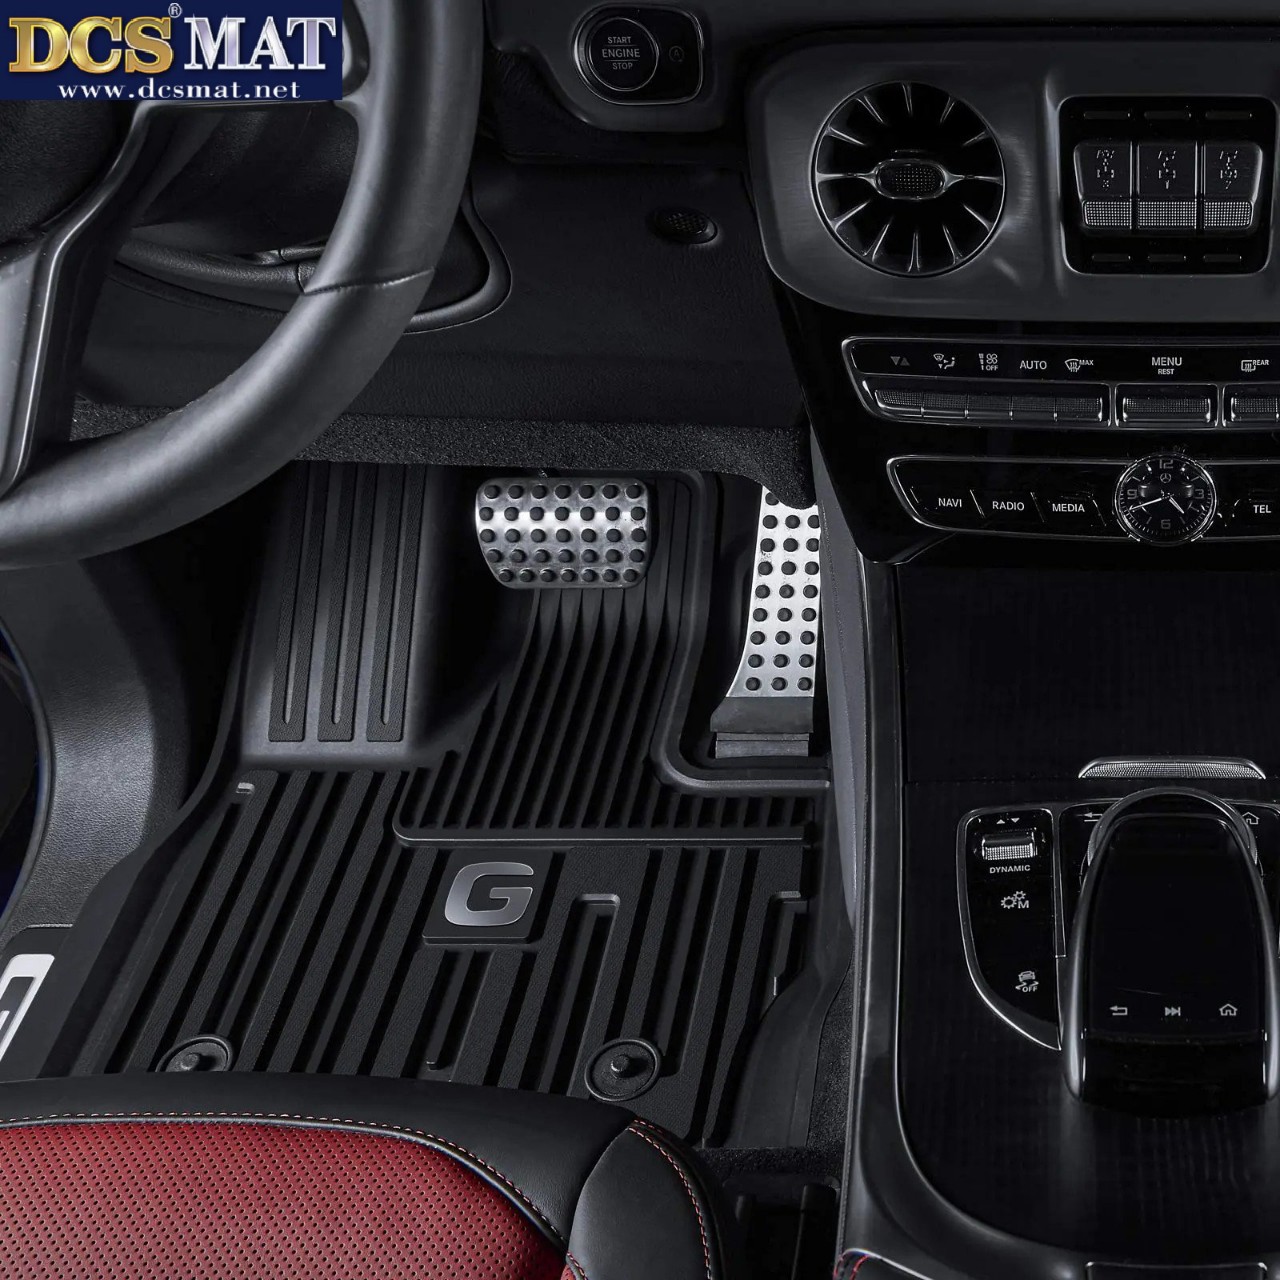 Thảm lót sàn xe ô tô Mercedes Ben G chất liệu nhựa TPE thương hiệu DCSMAT cao cấp,thiết kế chuẩn form xe